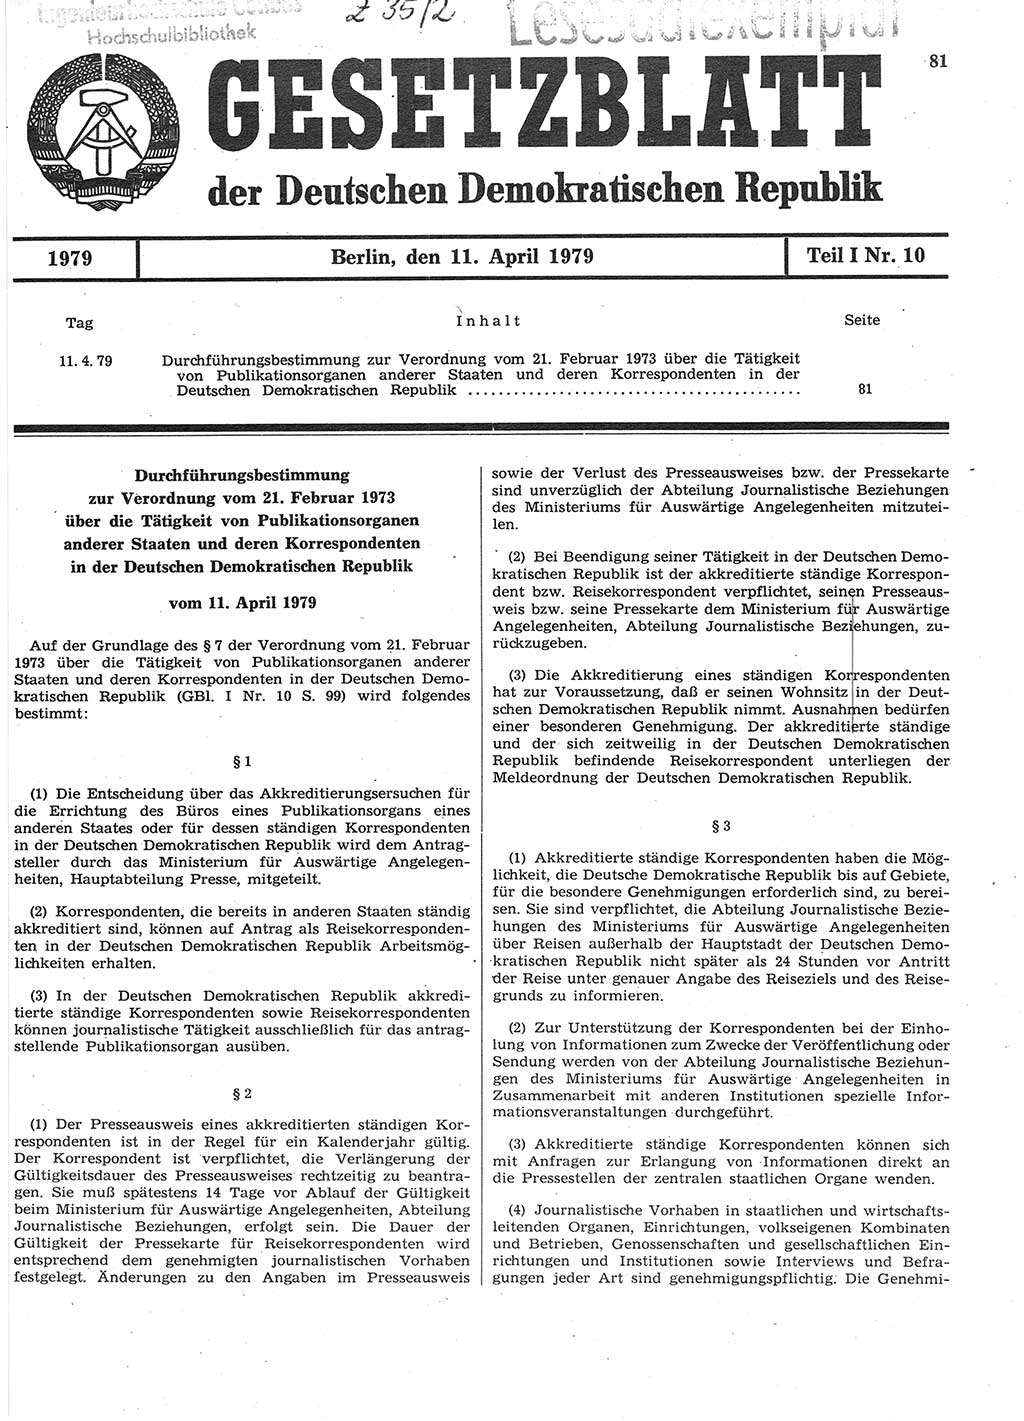 Gesetzblatt (GBl.) der Deutschen Demokratischen Republik (DDR) Teil Ⅰ 1979, Seite 81 (GBl. DDR Ⅰ 1979, S. 81)